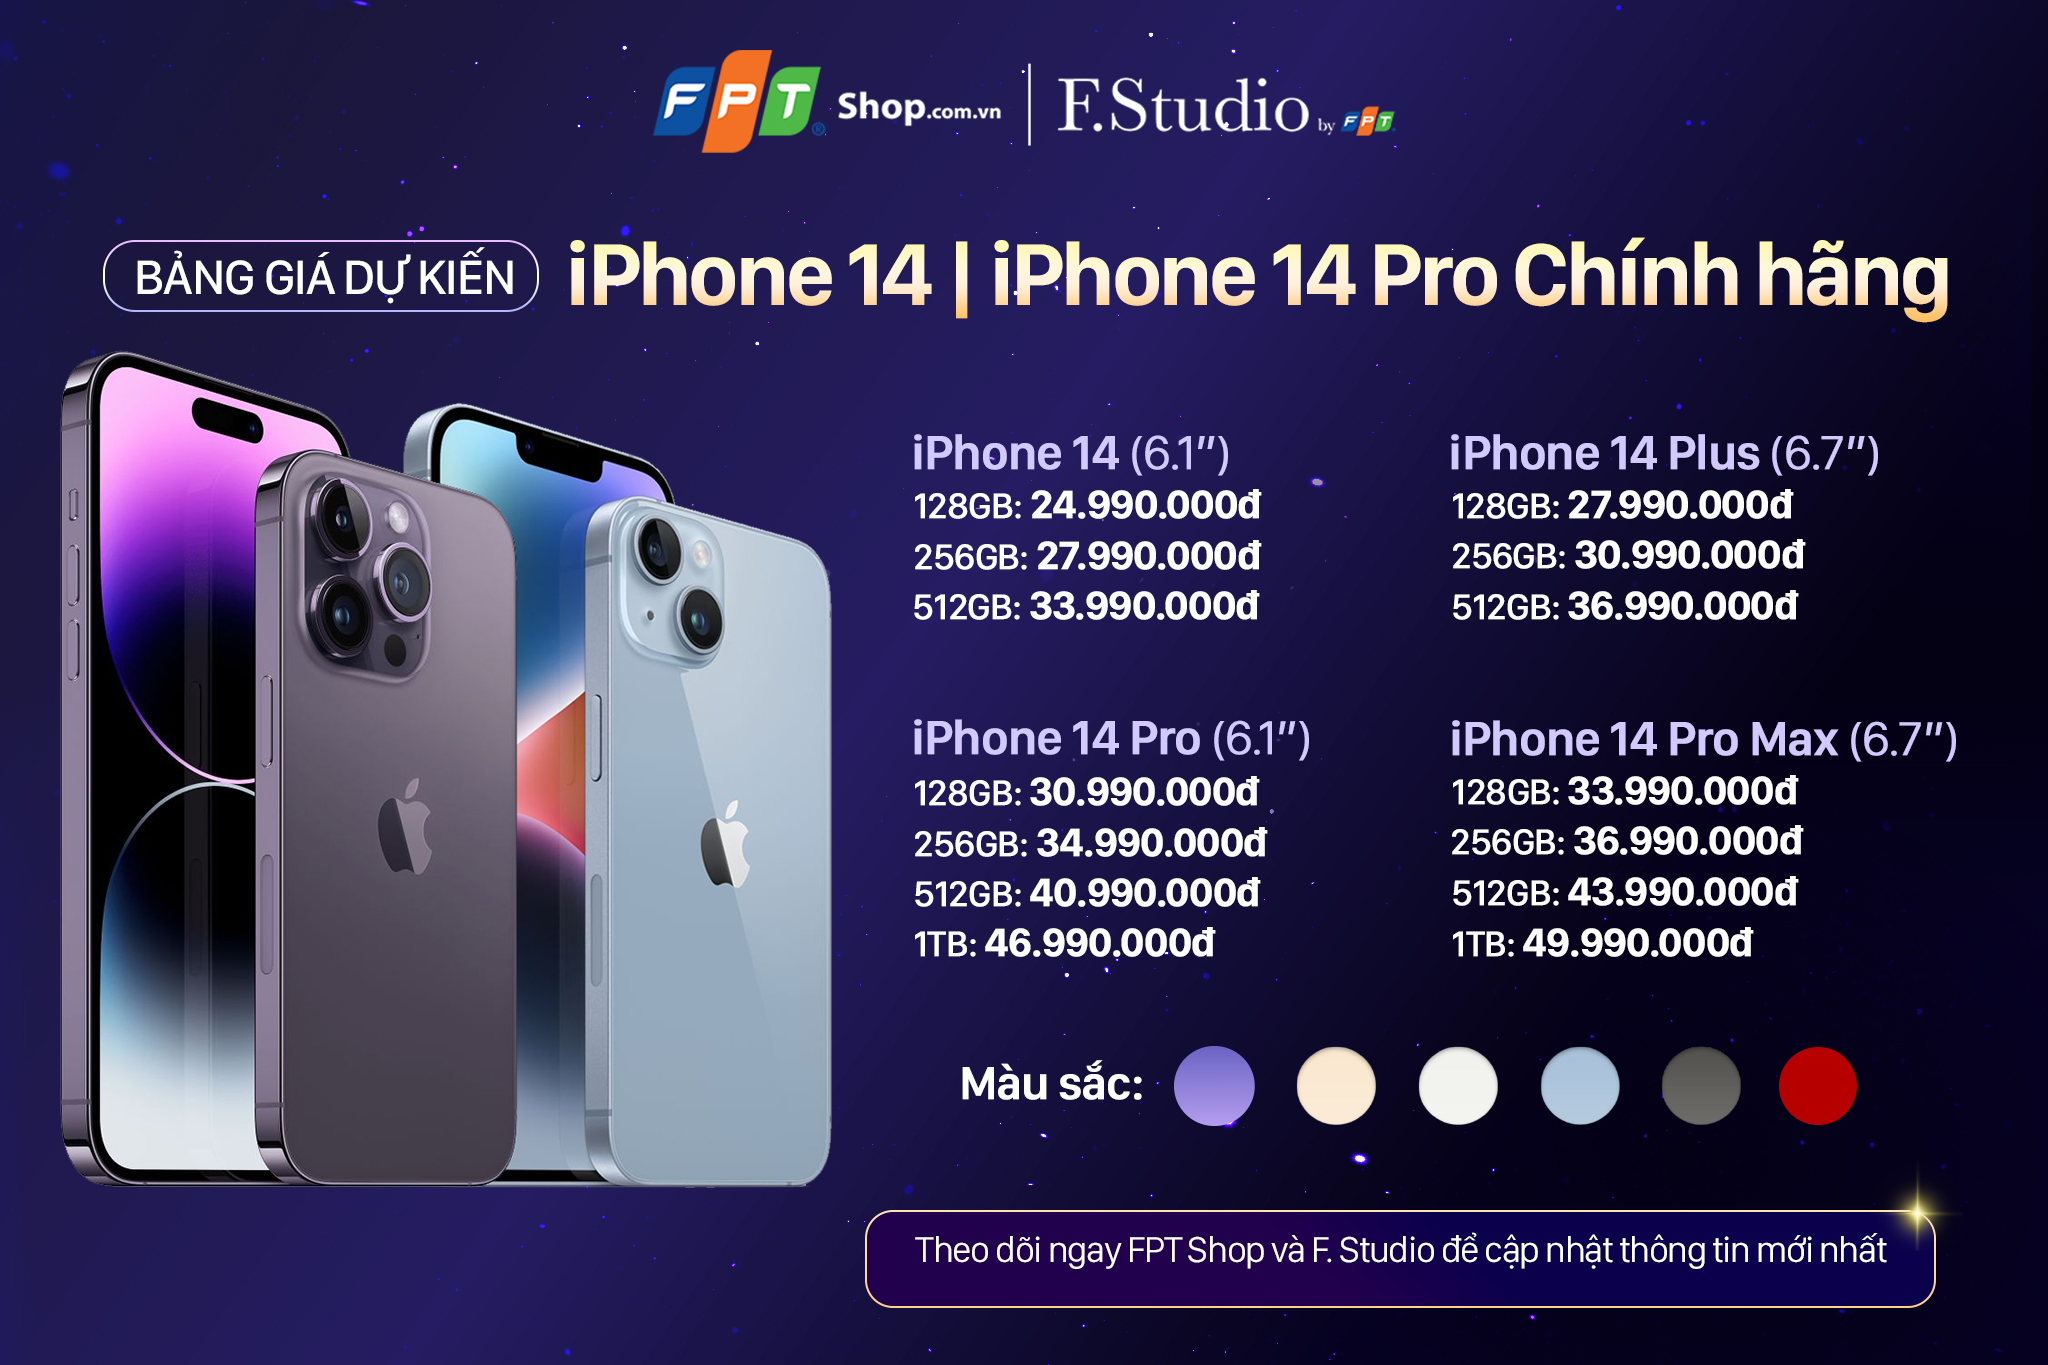 iPhone 14 chính hãng sẽ có giá dự kiến từ 24.99 triệu đồng tại FPT Shop